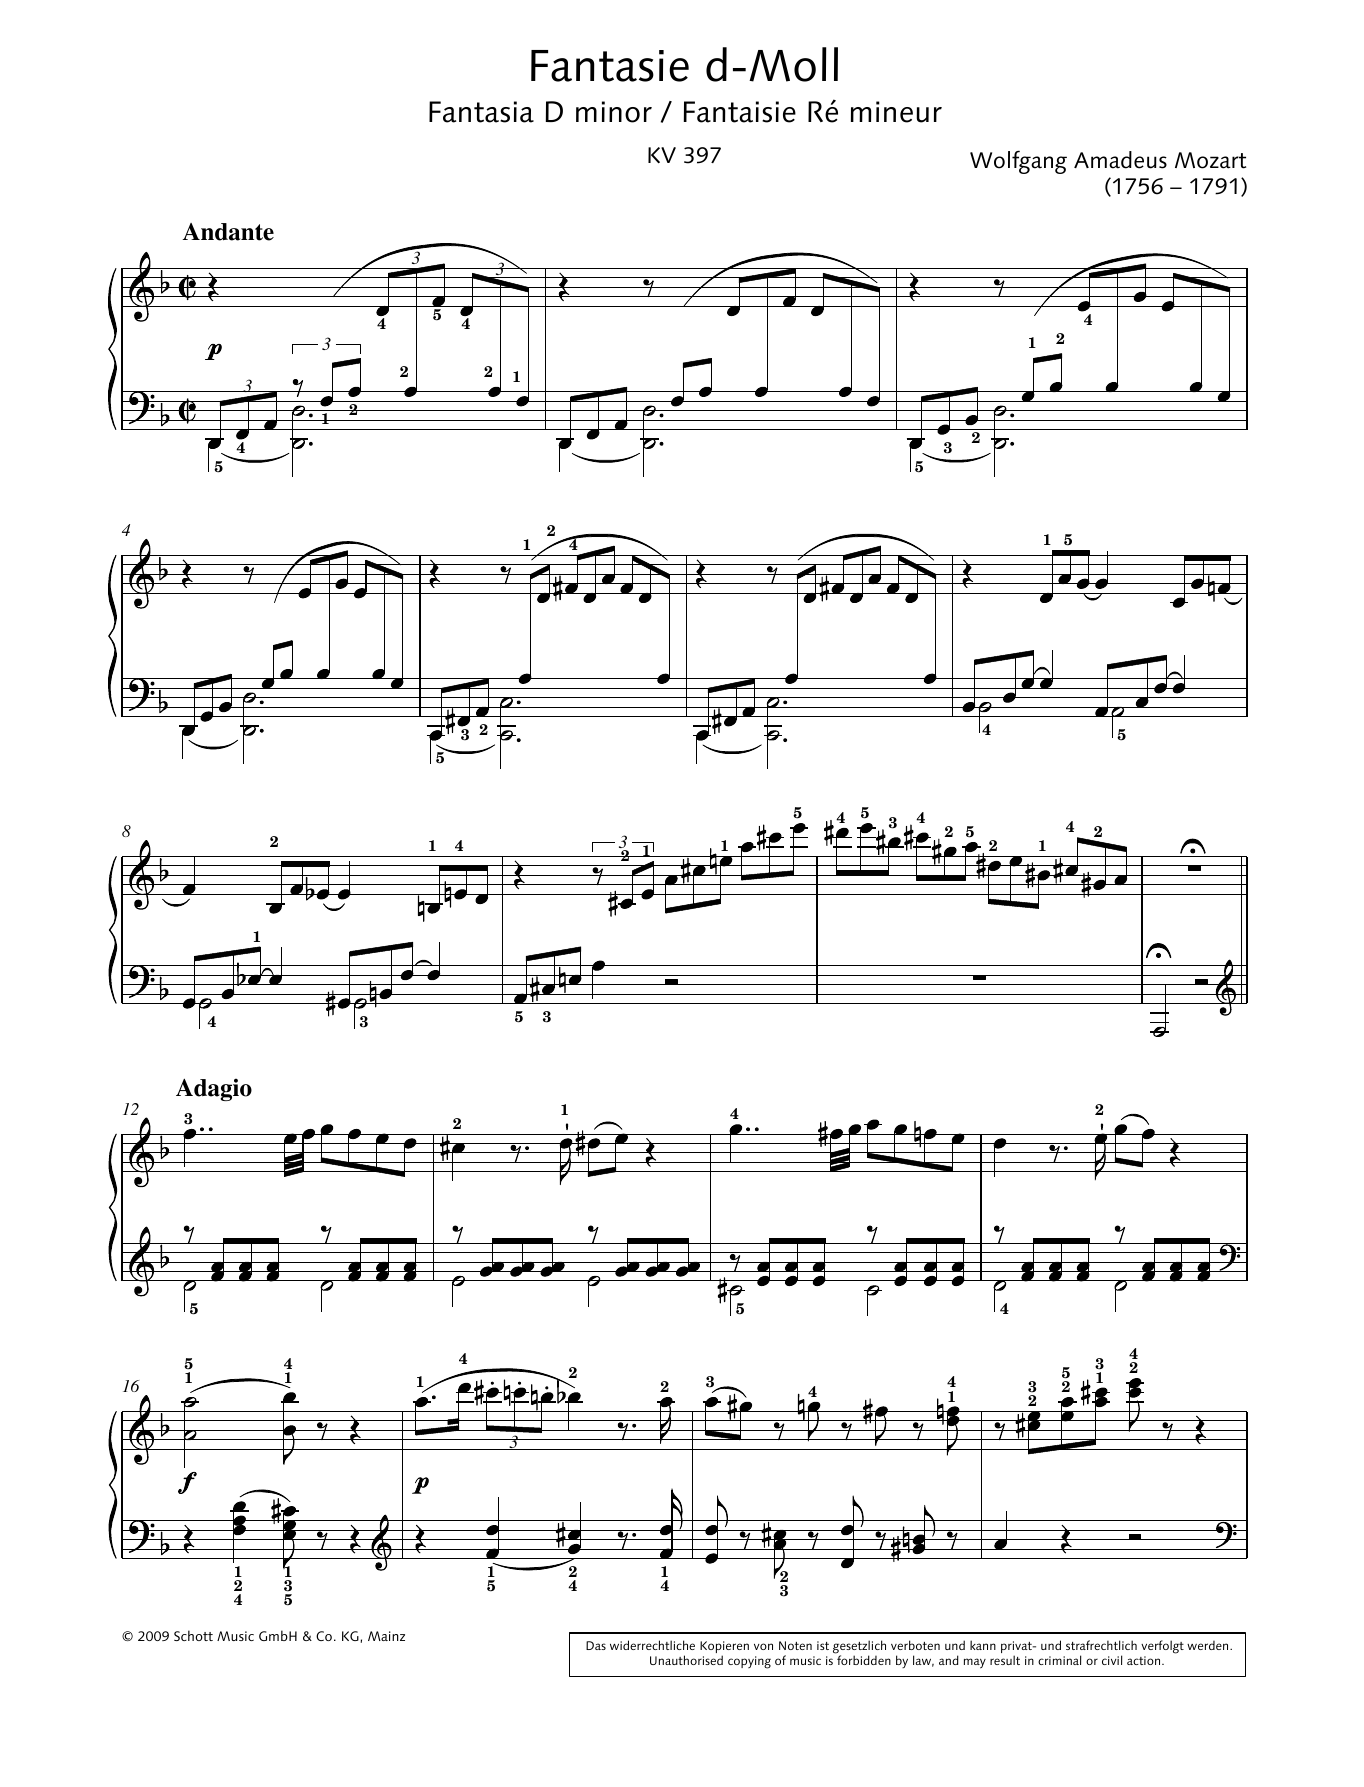 Download Wolfgang Amadeus Mozart Fantasia in D minor Sheet Music